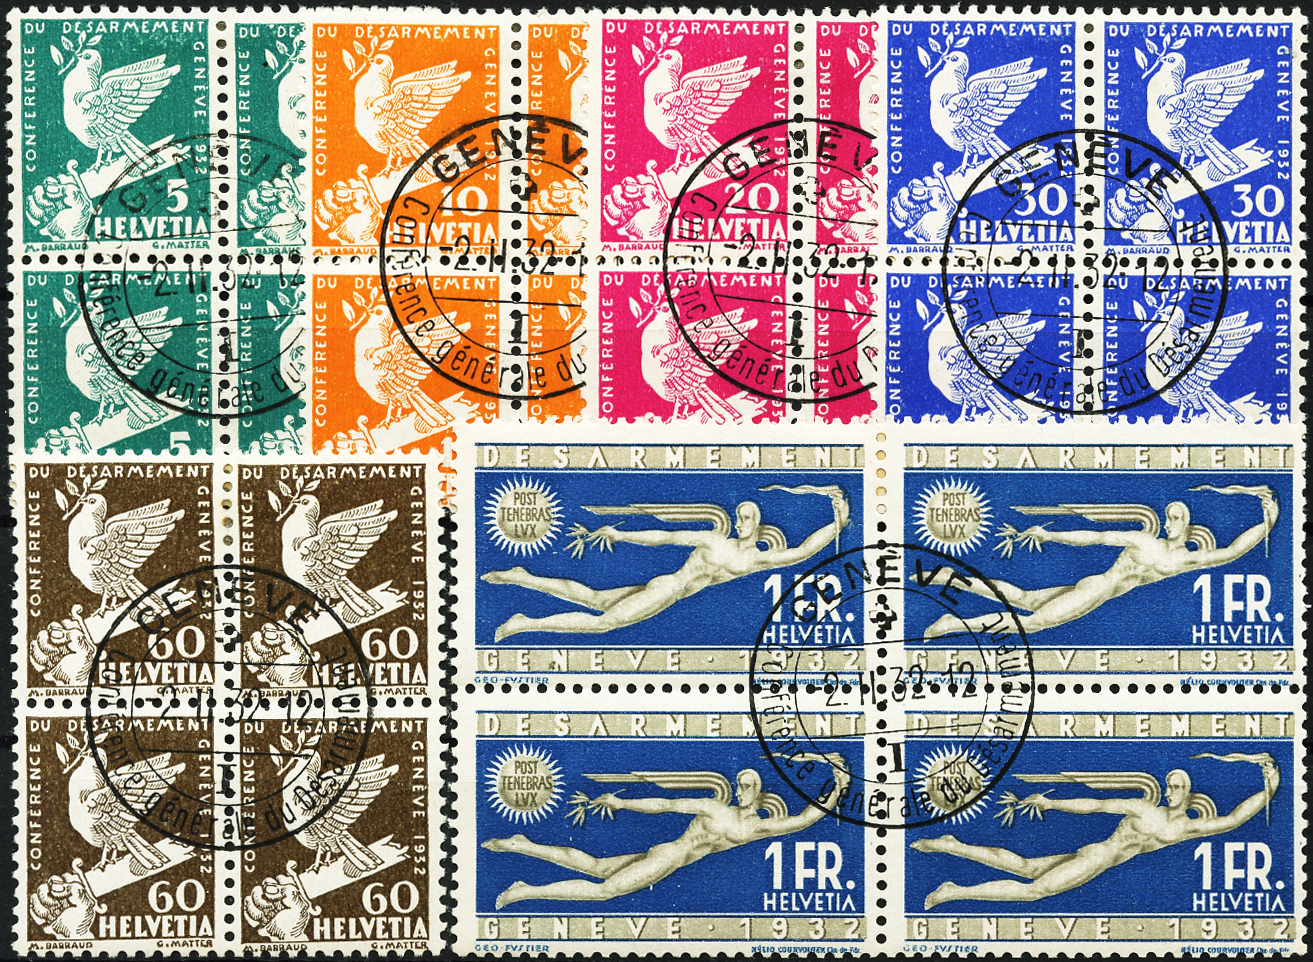 Bild-1: 185-190 - 1932, Gedenkausgabe zur Abrüstungskonferenz in Genf